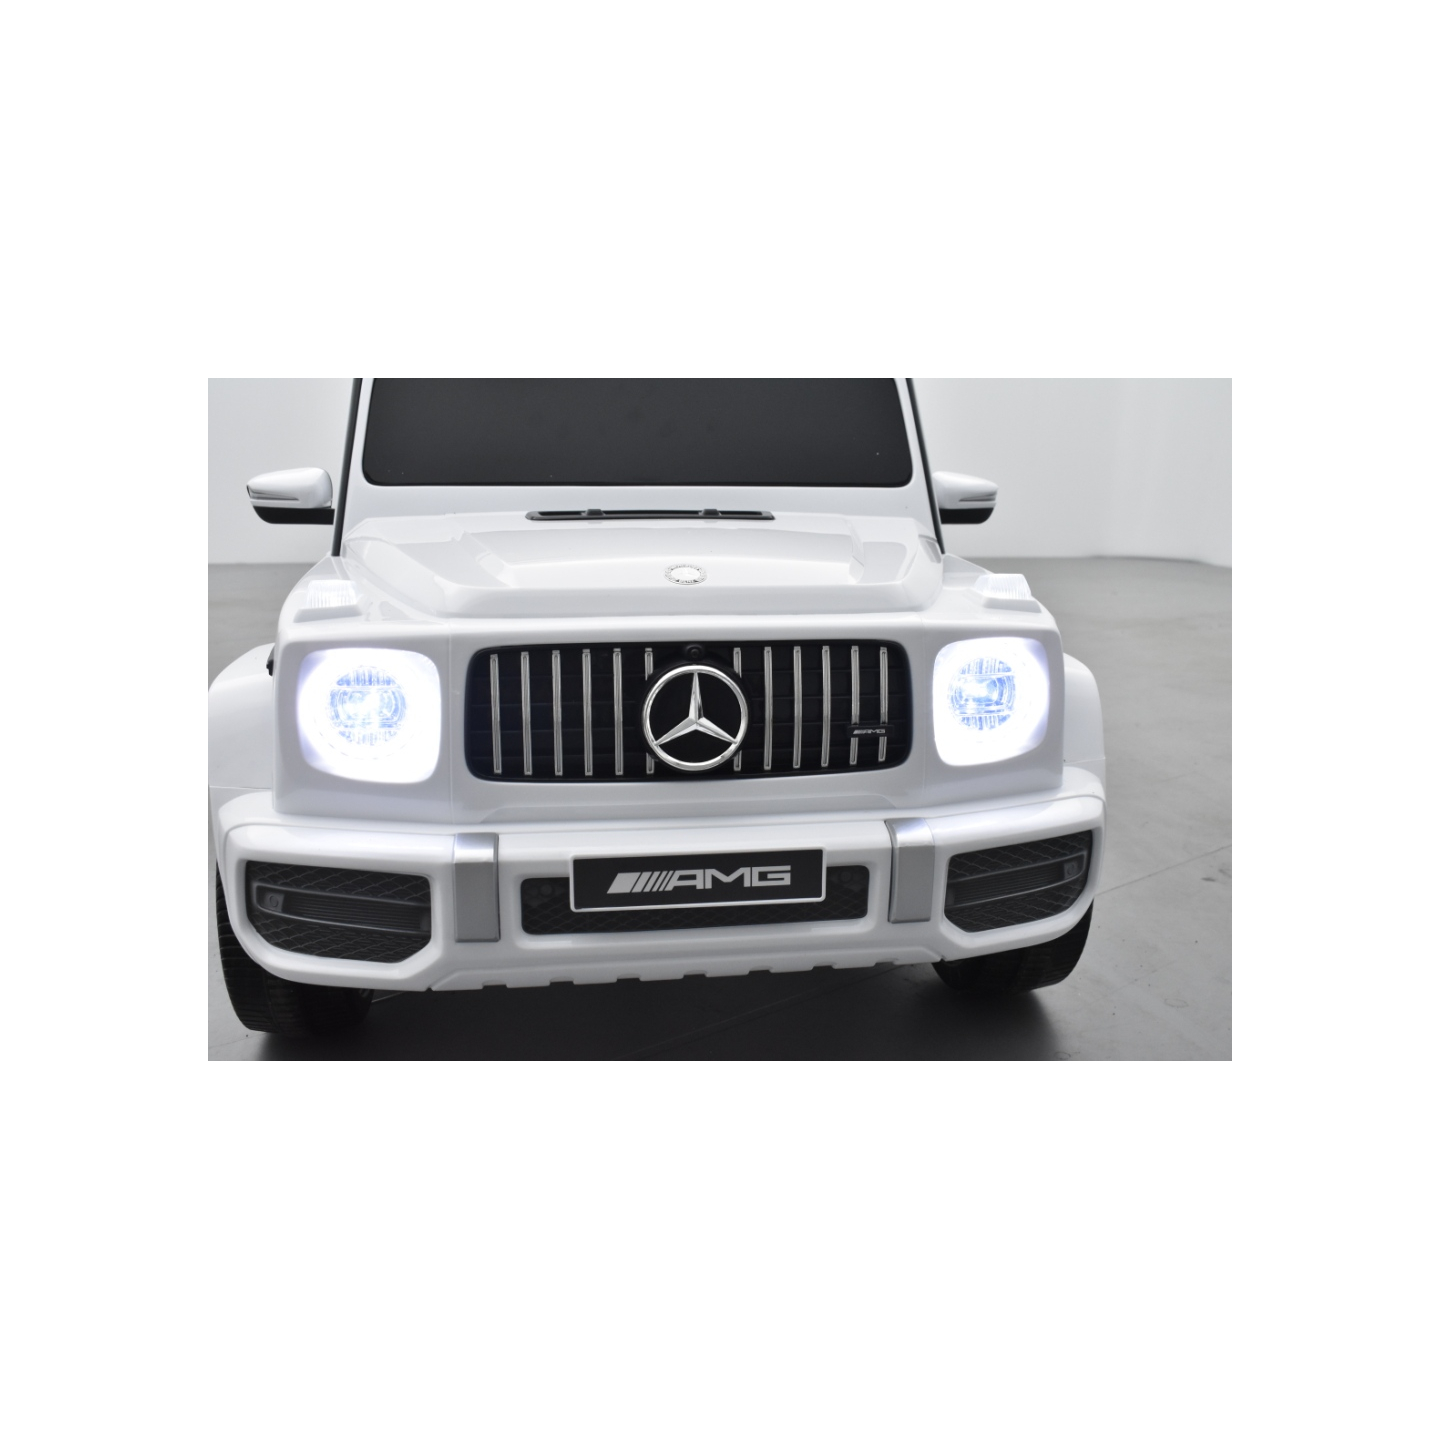 Mercedes G63 AMG 2 places Blanc, voiture électrique pour enfant, 24 volts - 4 moteurs